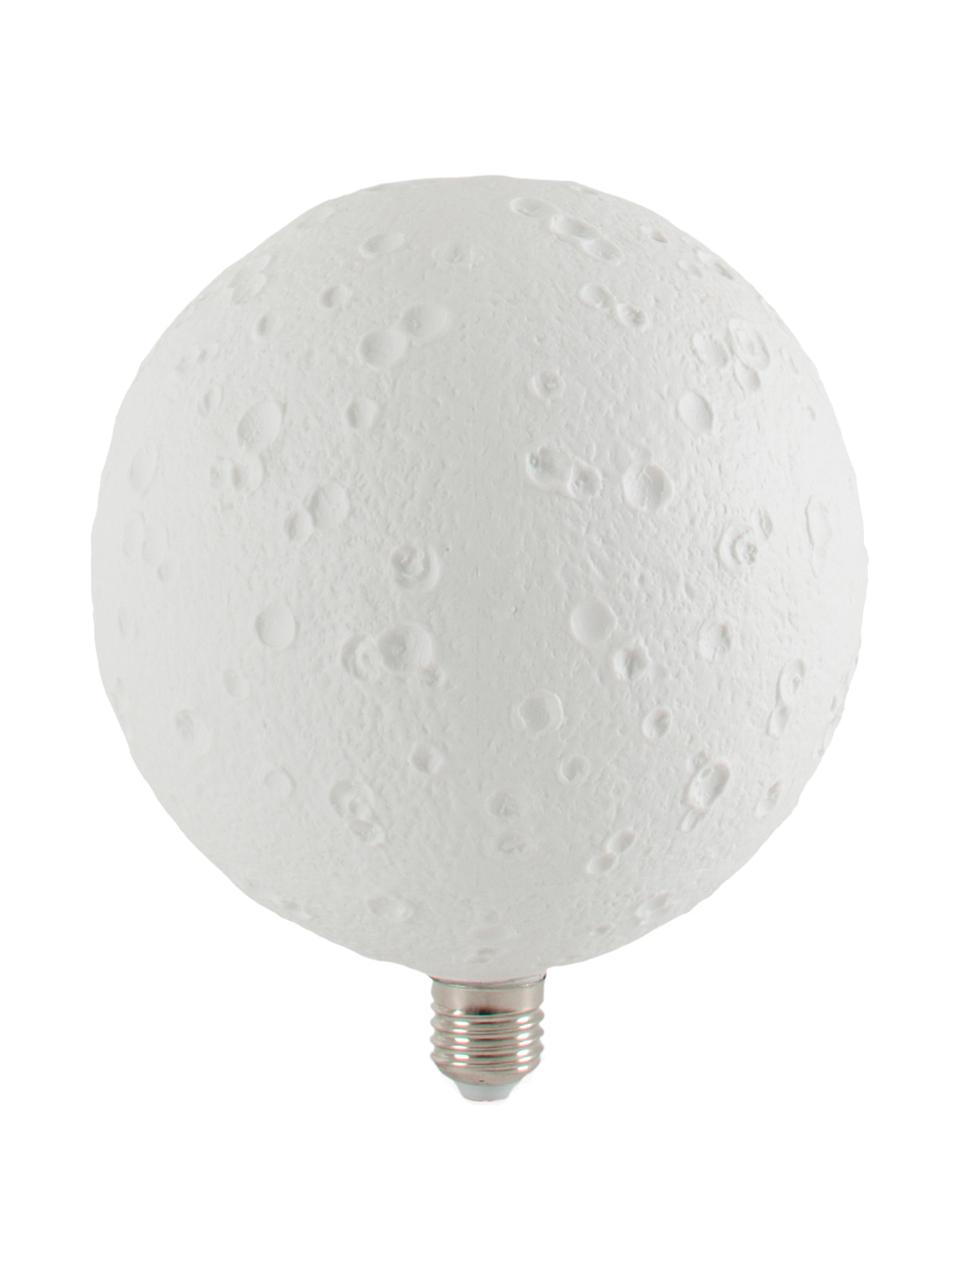 Ampoule (E27 - 220 lm) blanc neutre, 1 pièce, Blanc